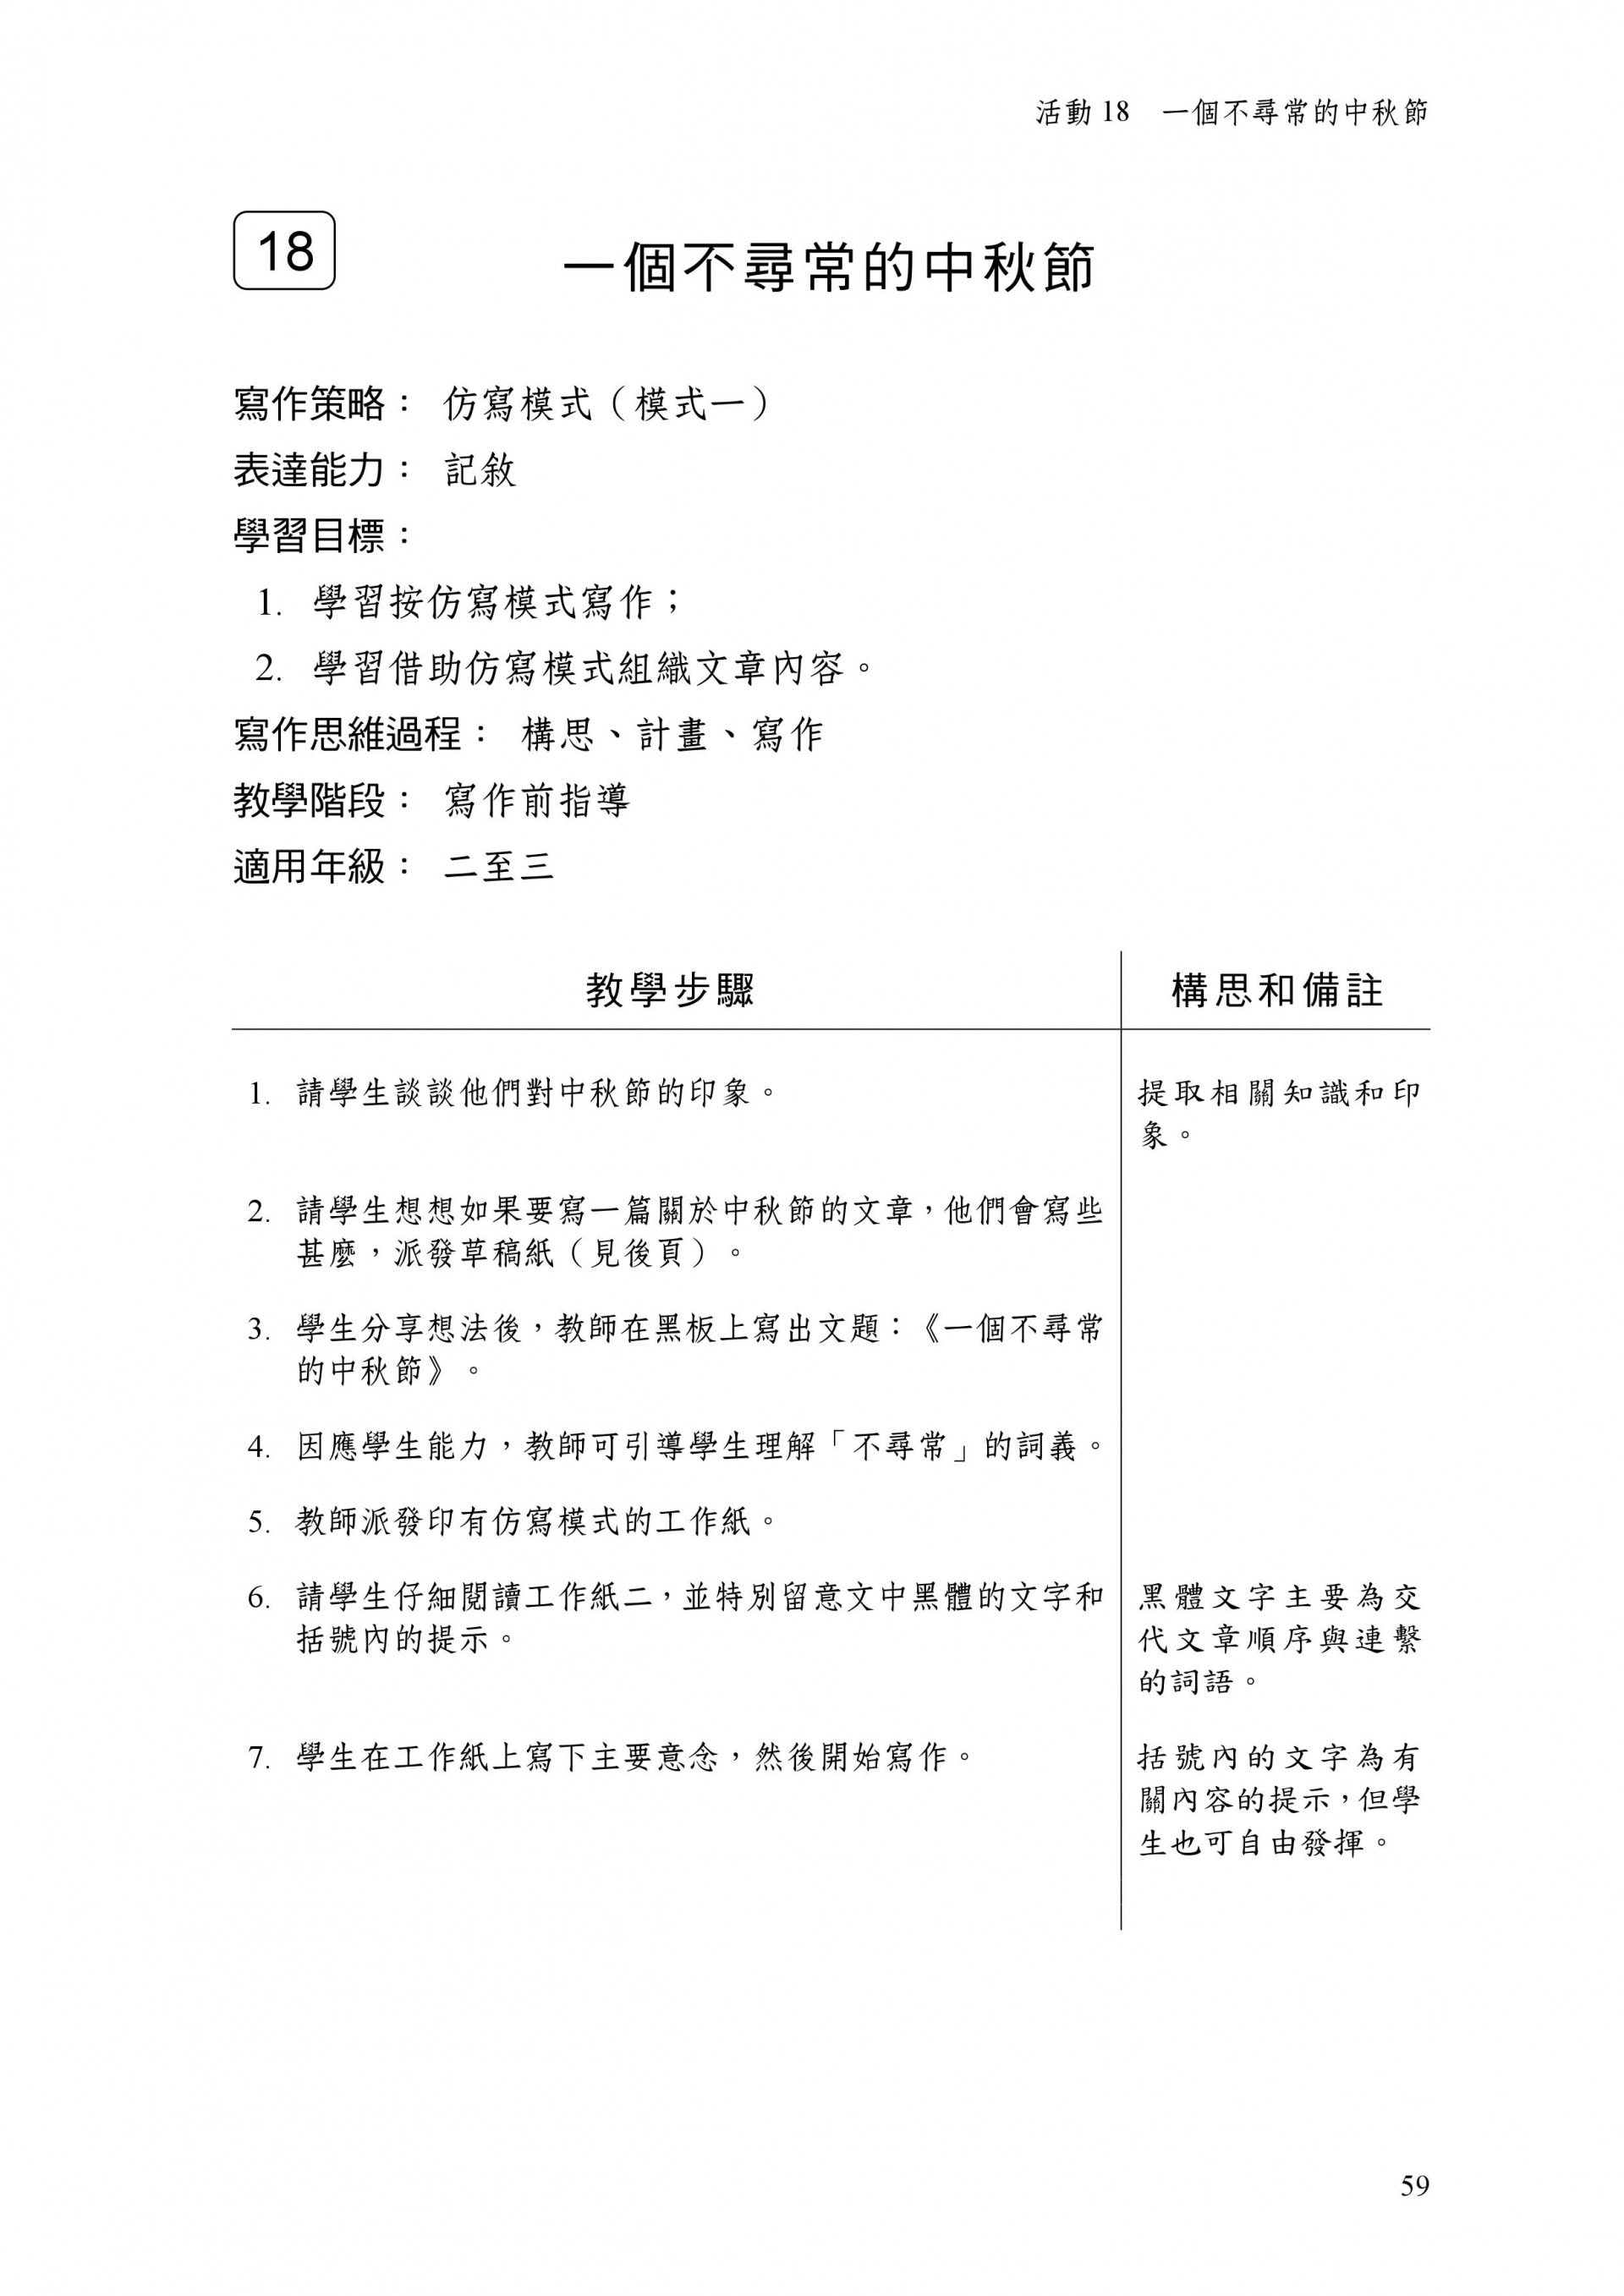 中文工作紙 8個作文題目訓練寫作思維循序漸進寫出好文章 香港01 親子